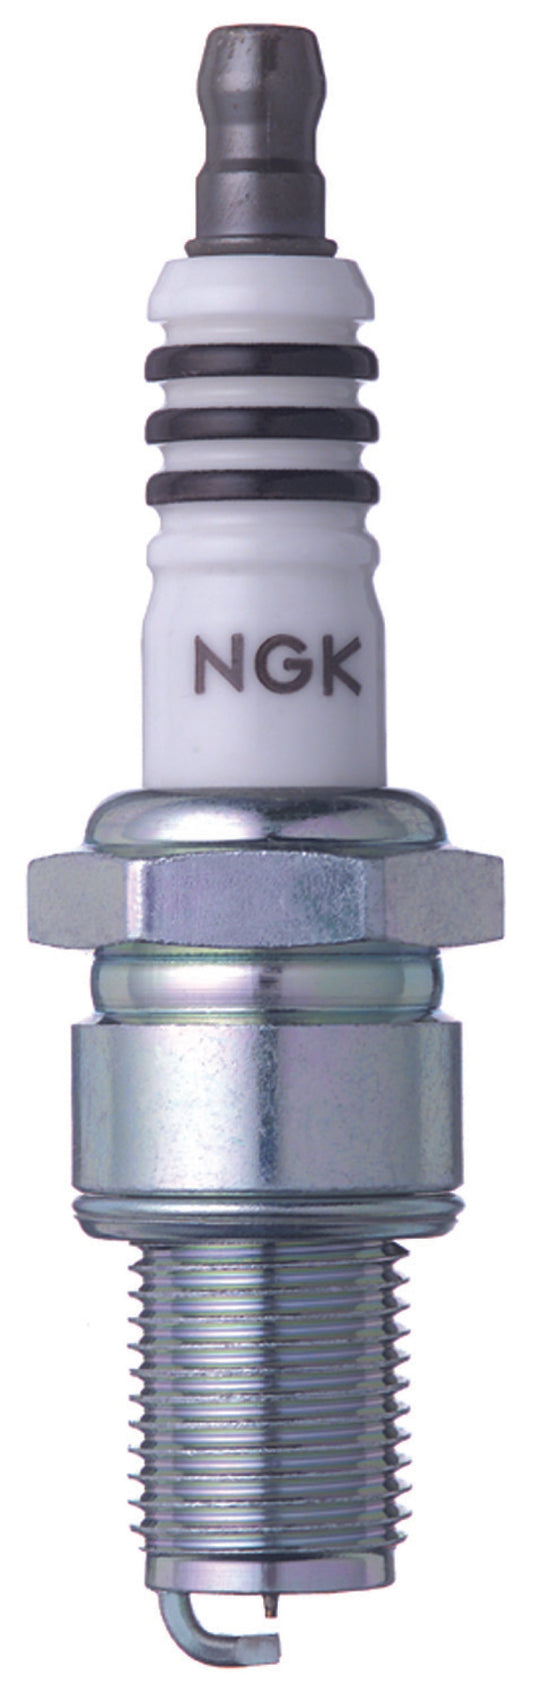 NGK Iridium IX Spark Plug Box of 4 (BR8EIX SOLID)